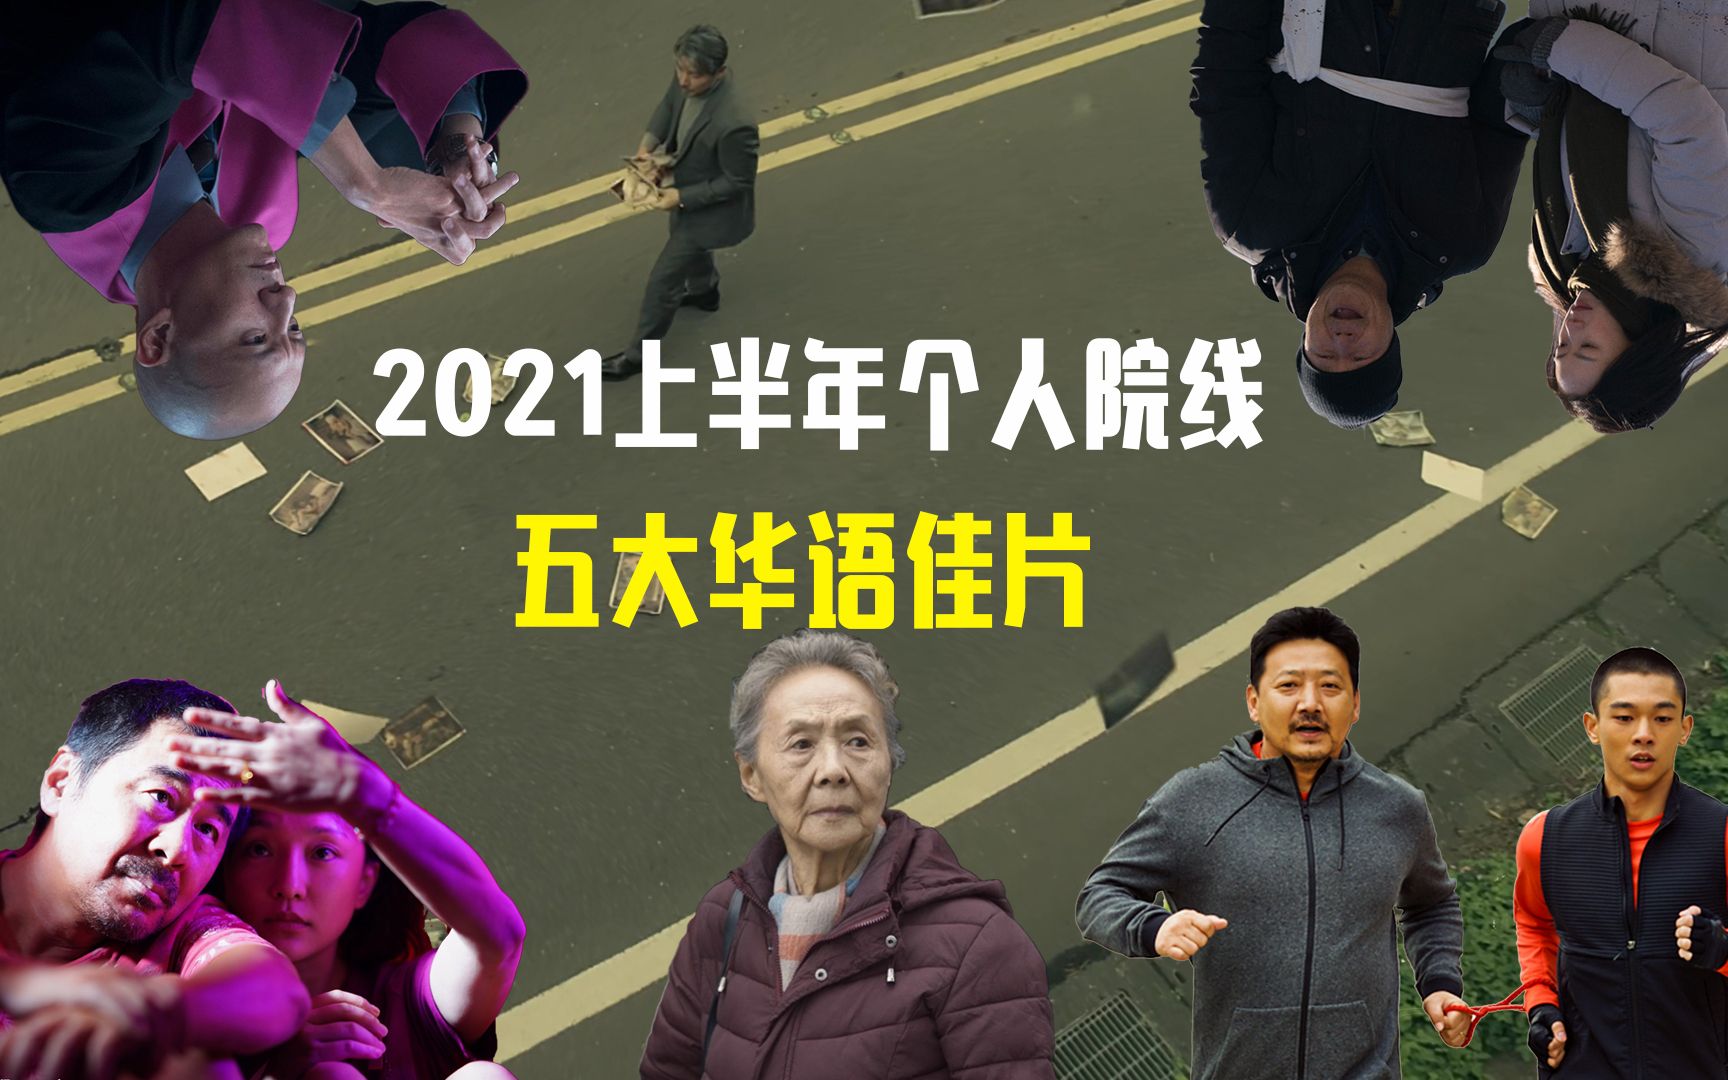 2021上半年个人院线五大华语佳片